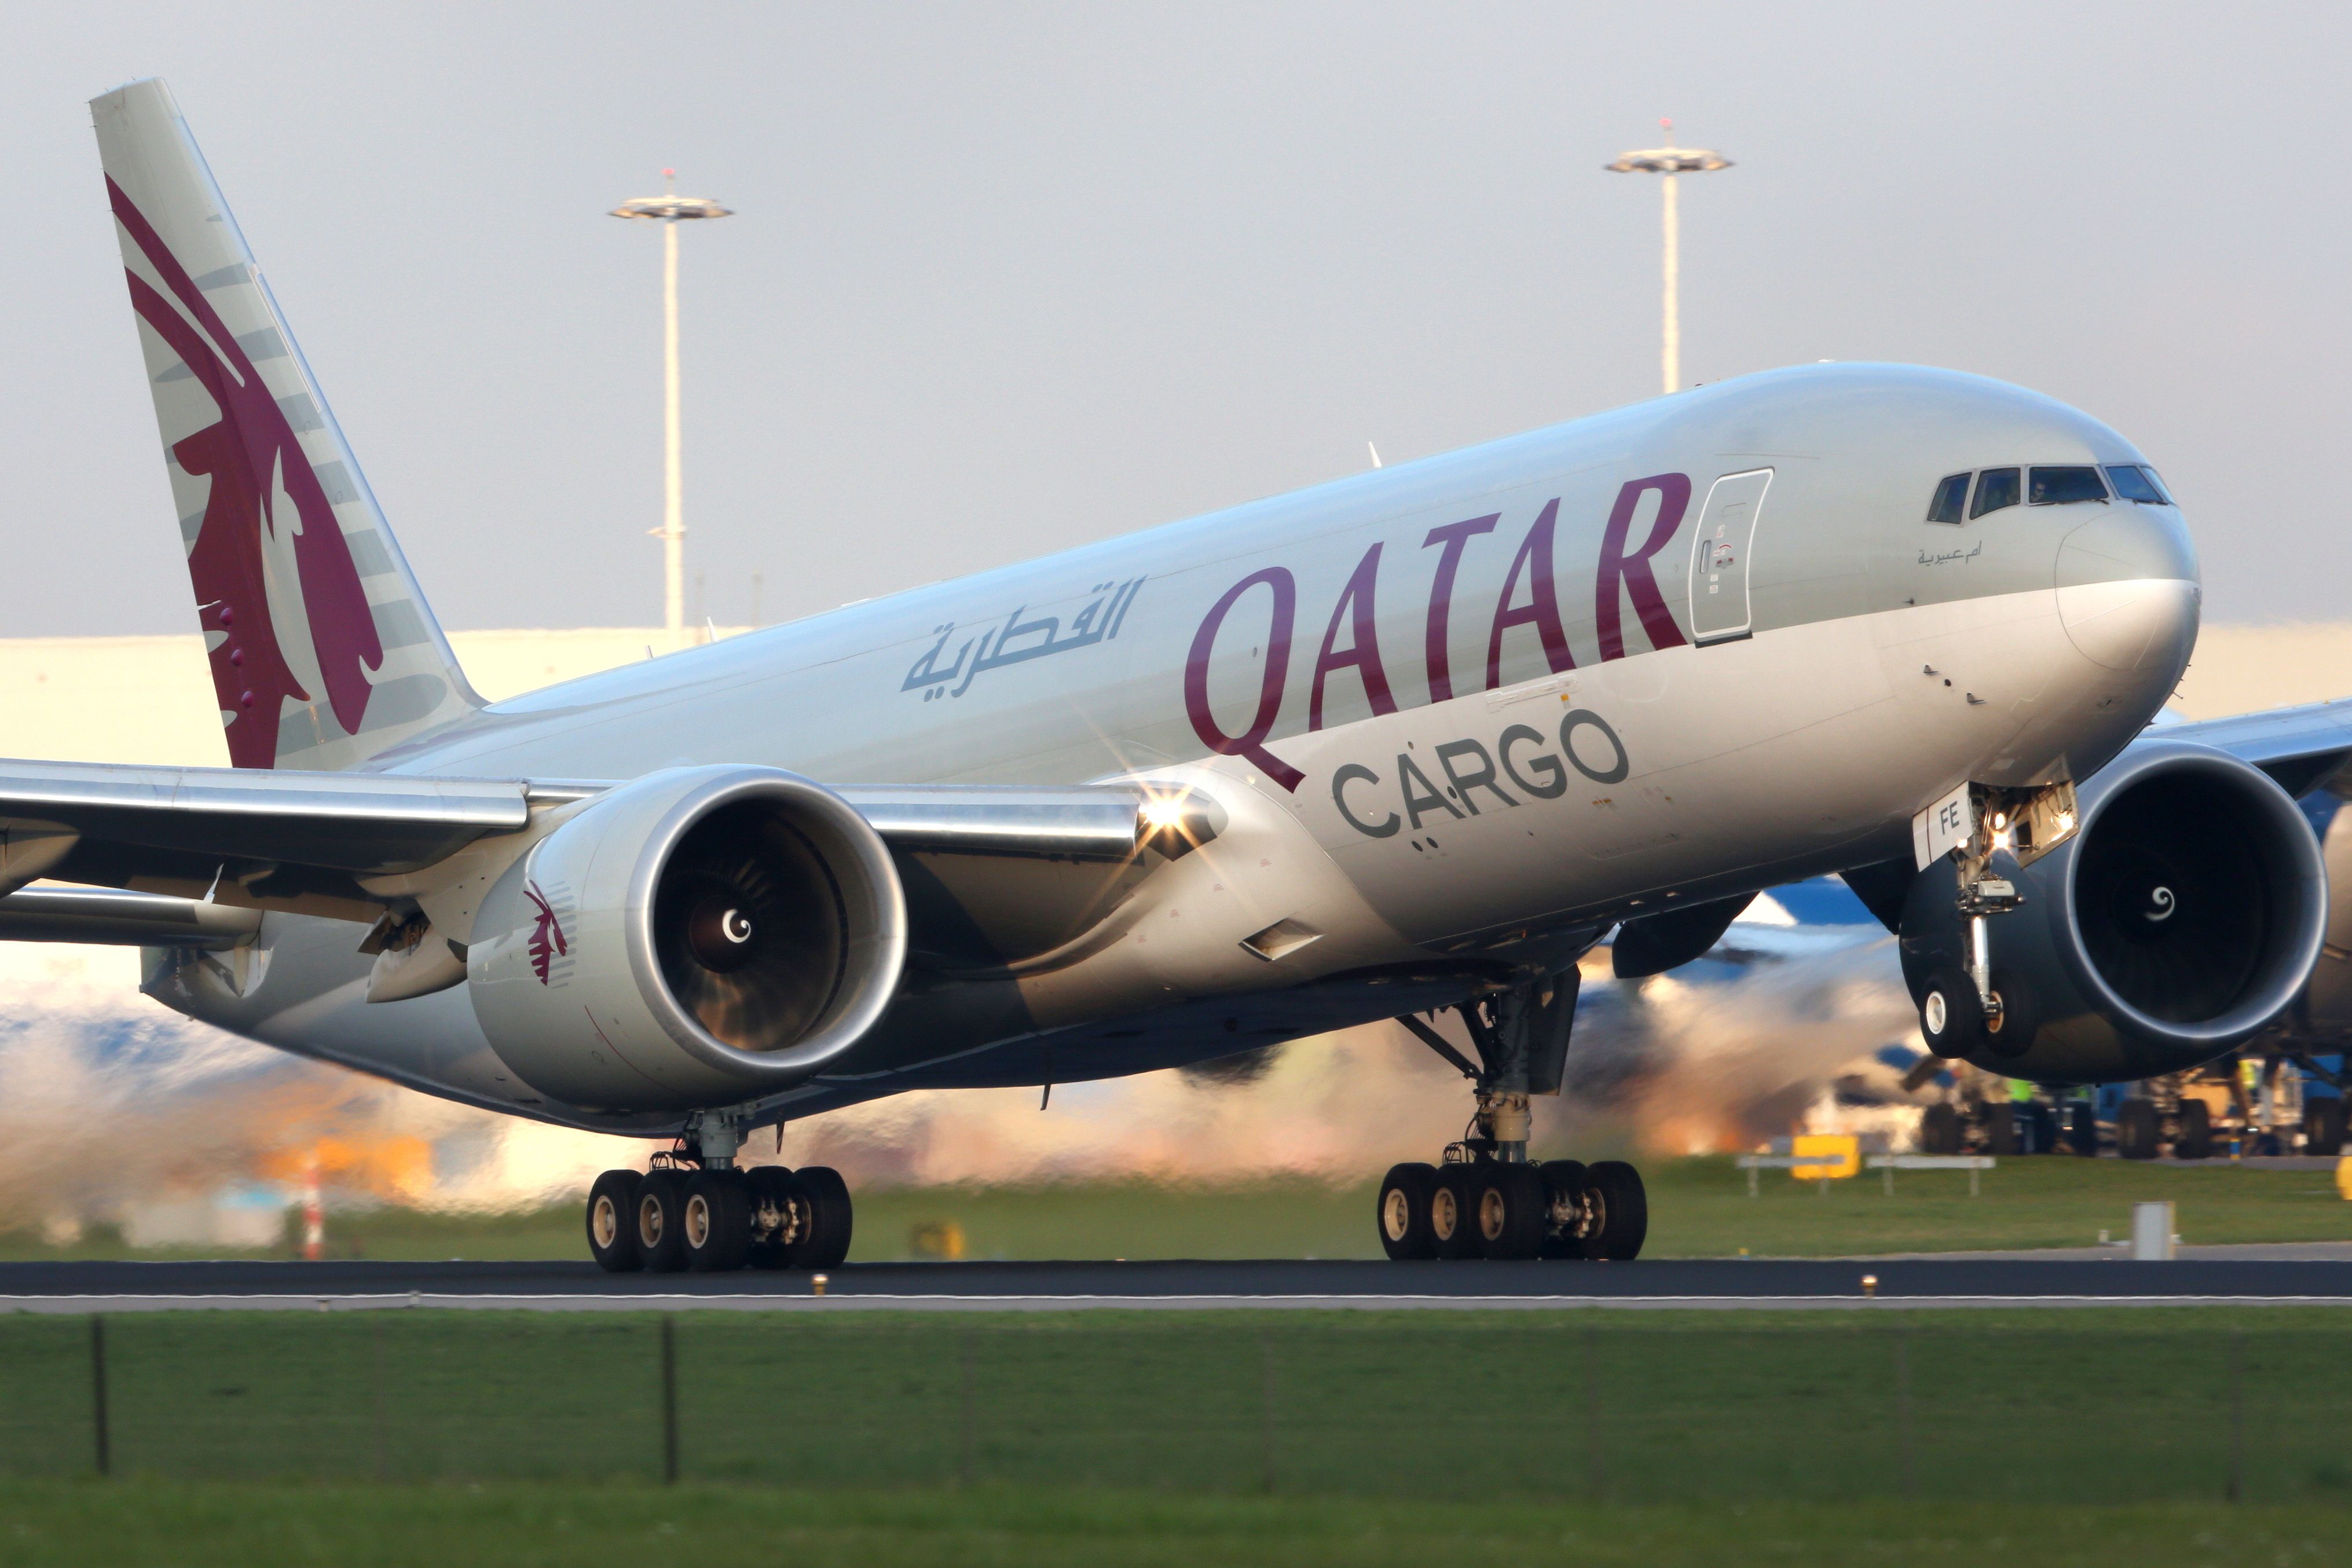 Qatar Airways Cargo Boeing 777 taking off